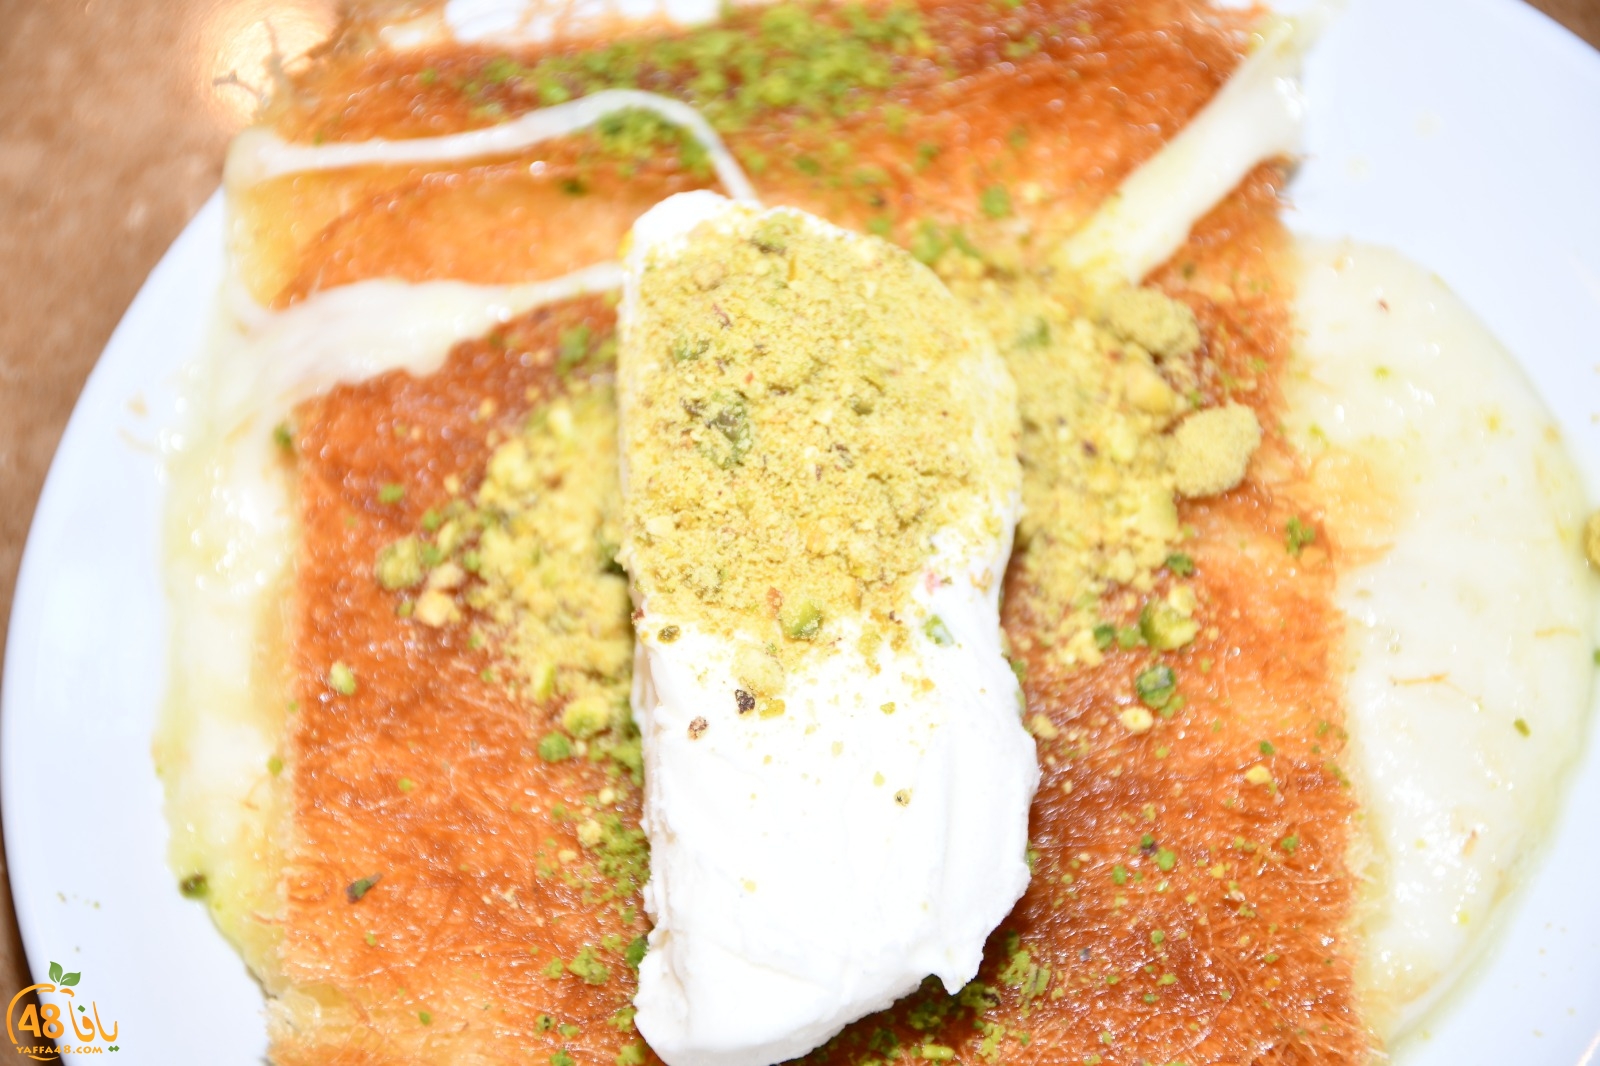 ع بالكم صحن كنافة؟! - حلويات الحج بيك في يافا ينتظركم بألذّ أطباق الكنافة الشامية